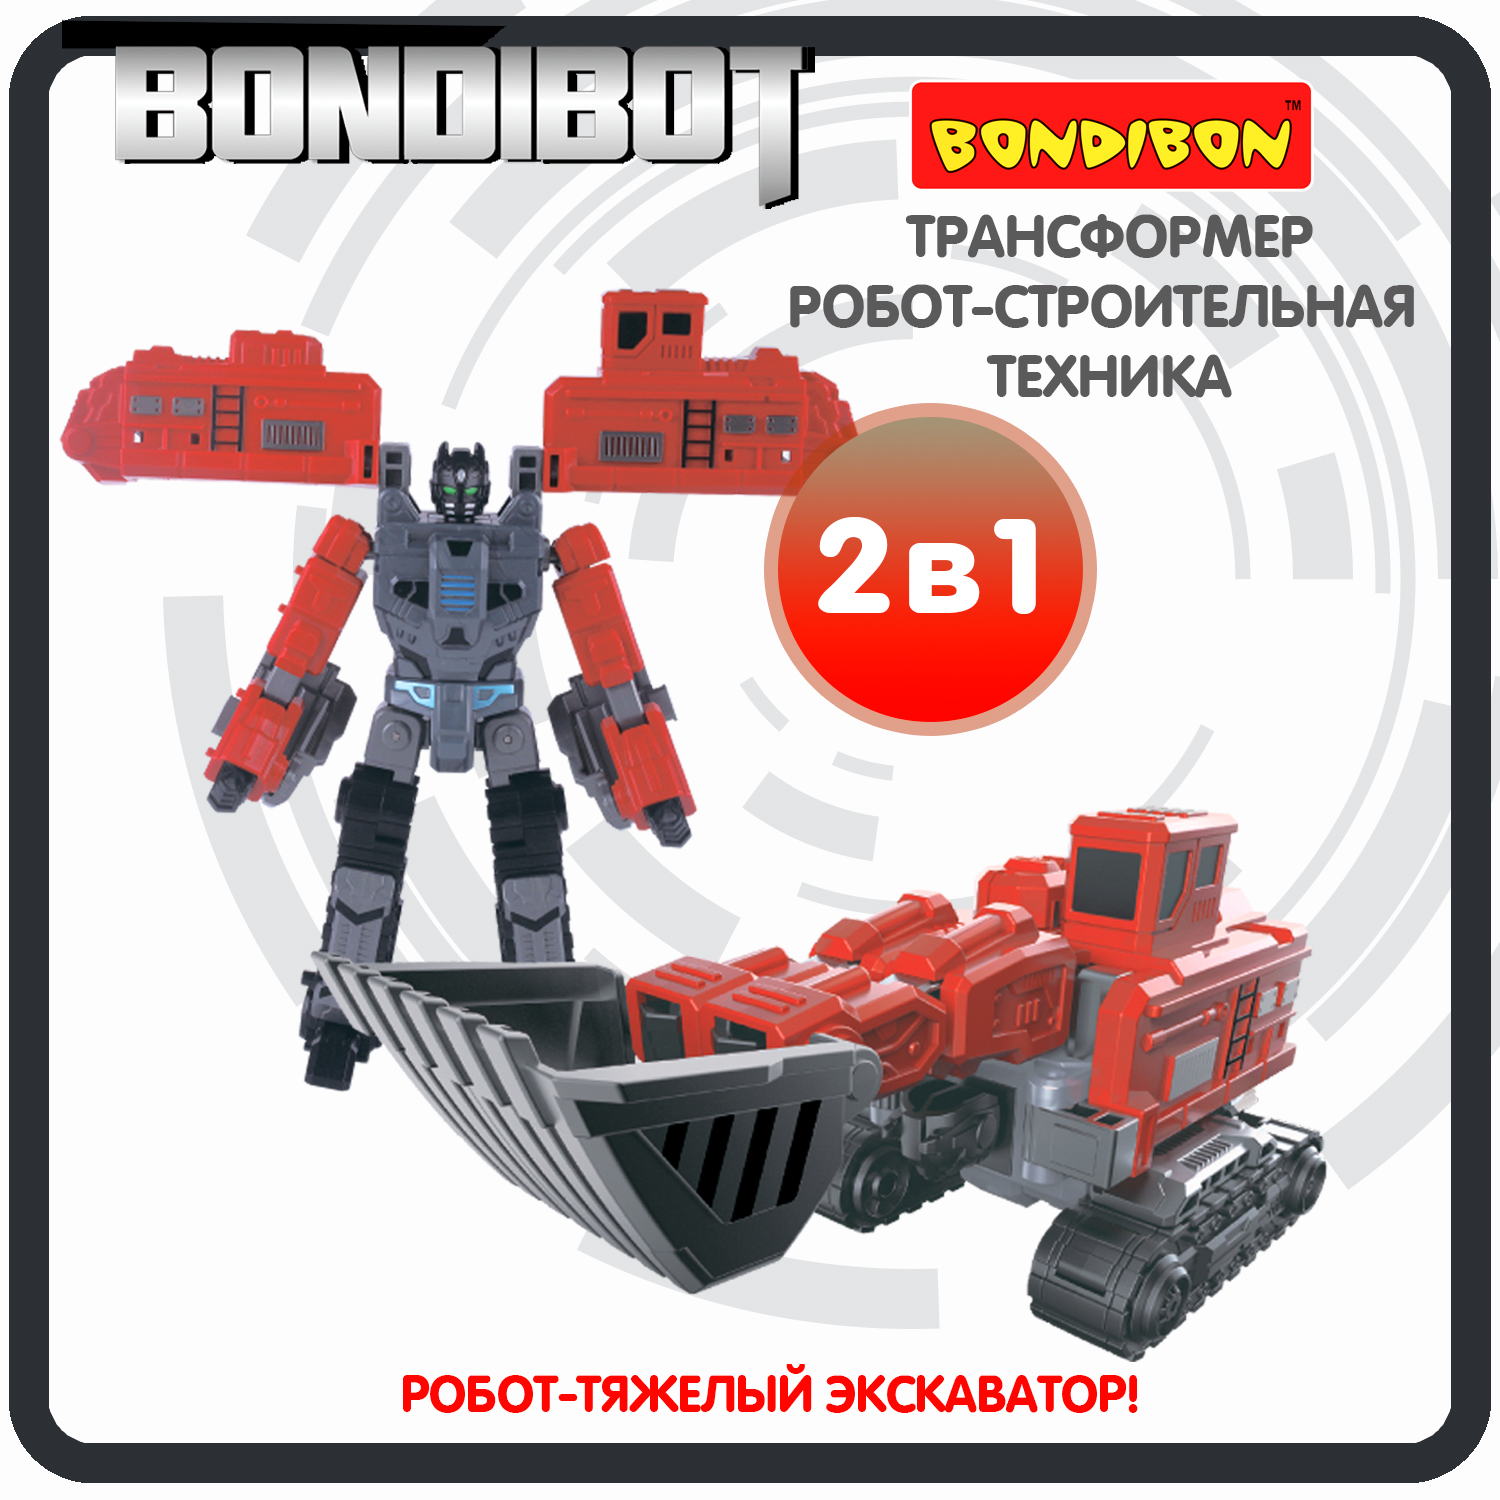 Трансформер робот-строительная техника, 2в1 BONDIBOT Bondibon, тяжёлый экскаватор / ВВ6057 робот трансформер мини тобот экскаватор доузер